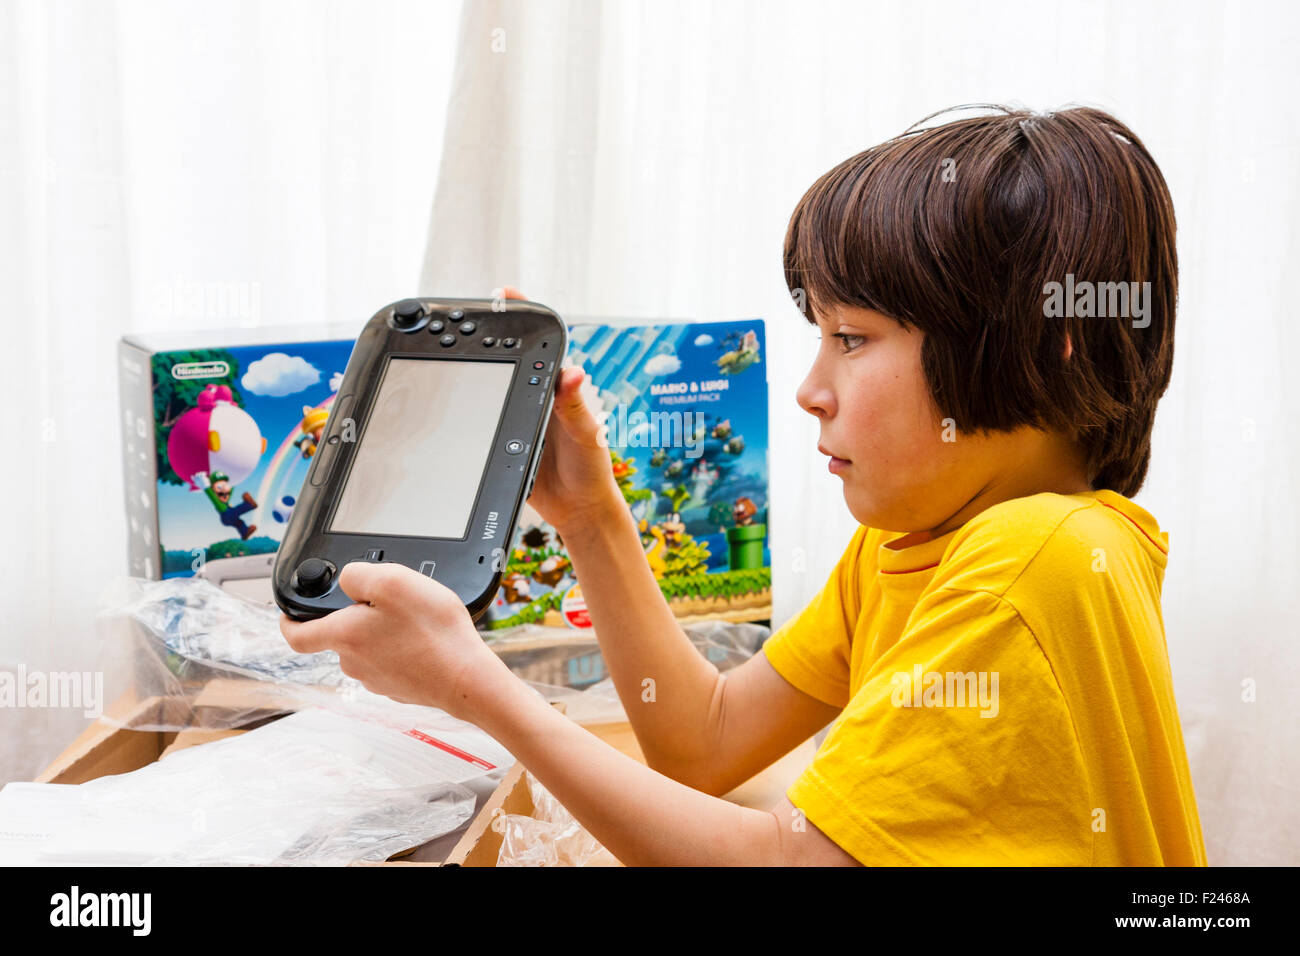 Homme de race blanche enfant, garçon, 11-13 ans, tenant à deux mains une  console Nintendo Wii U juste après avoir sortie de la boîte, qui est à côté  de lui Photo Stock -